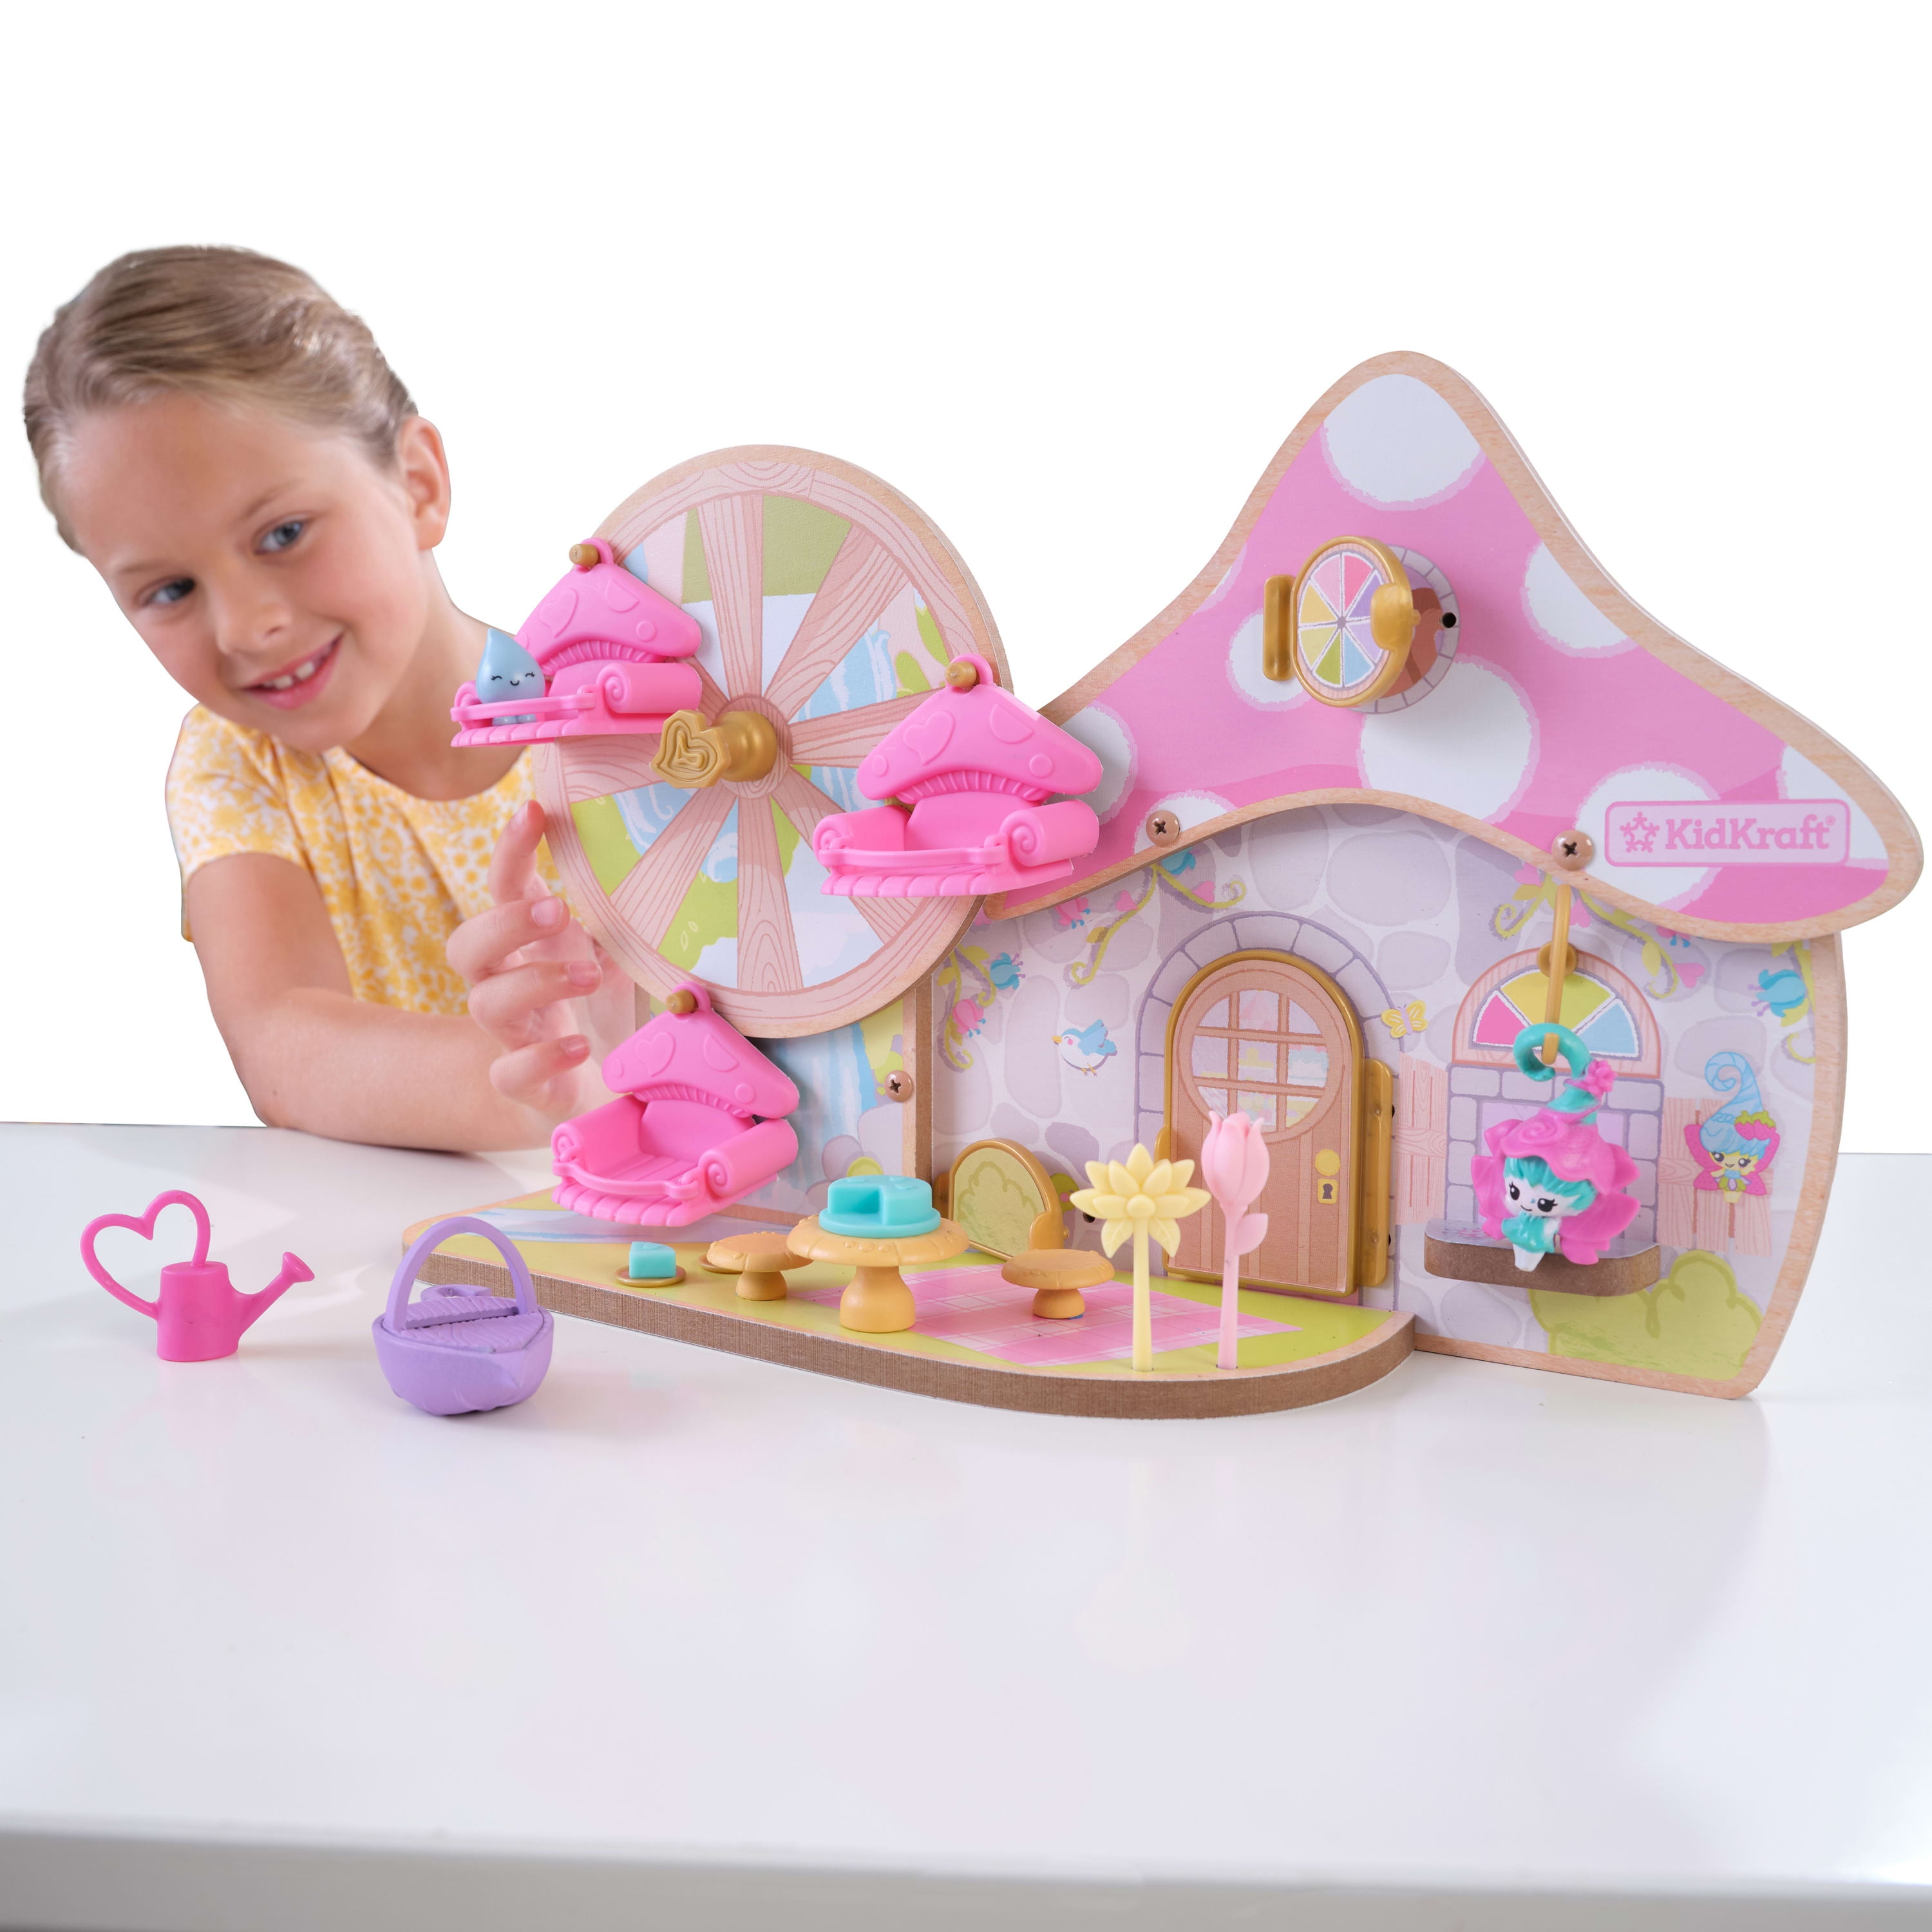 Barbie Dreamcamper Vehicle Playset, 1 unit - Kroger